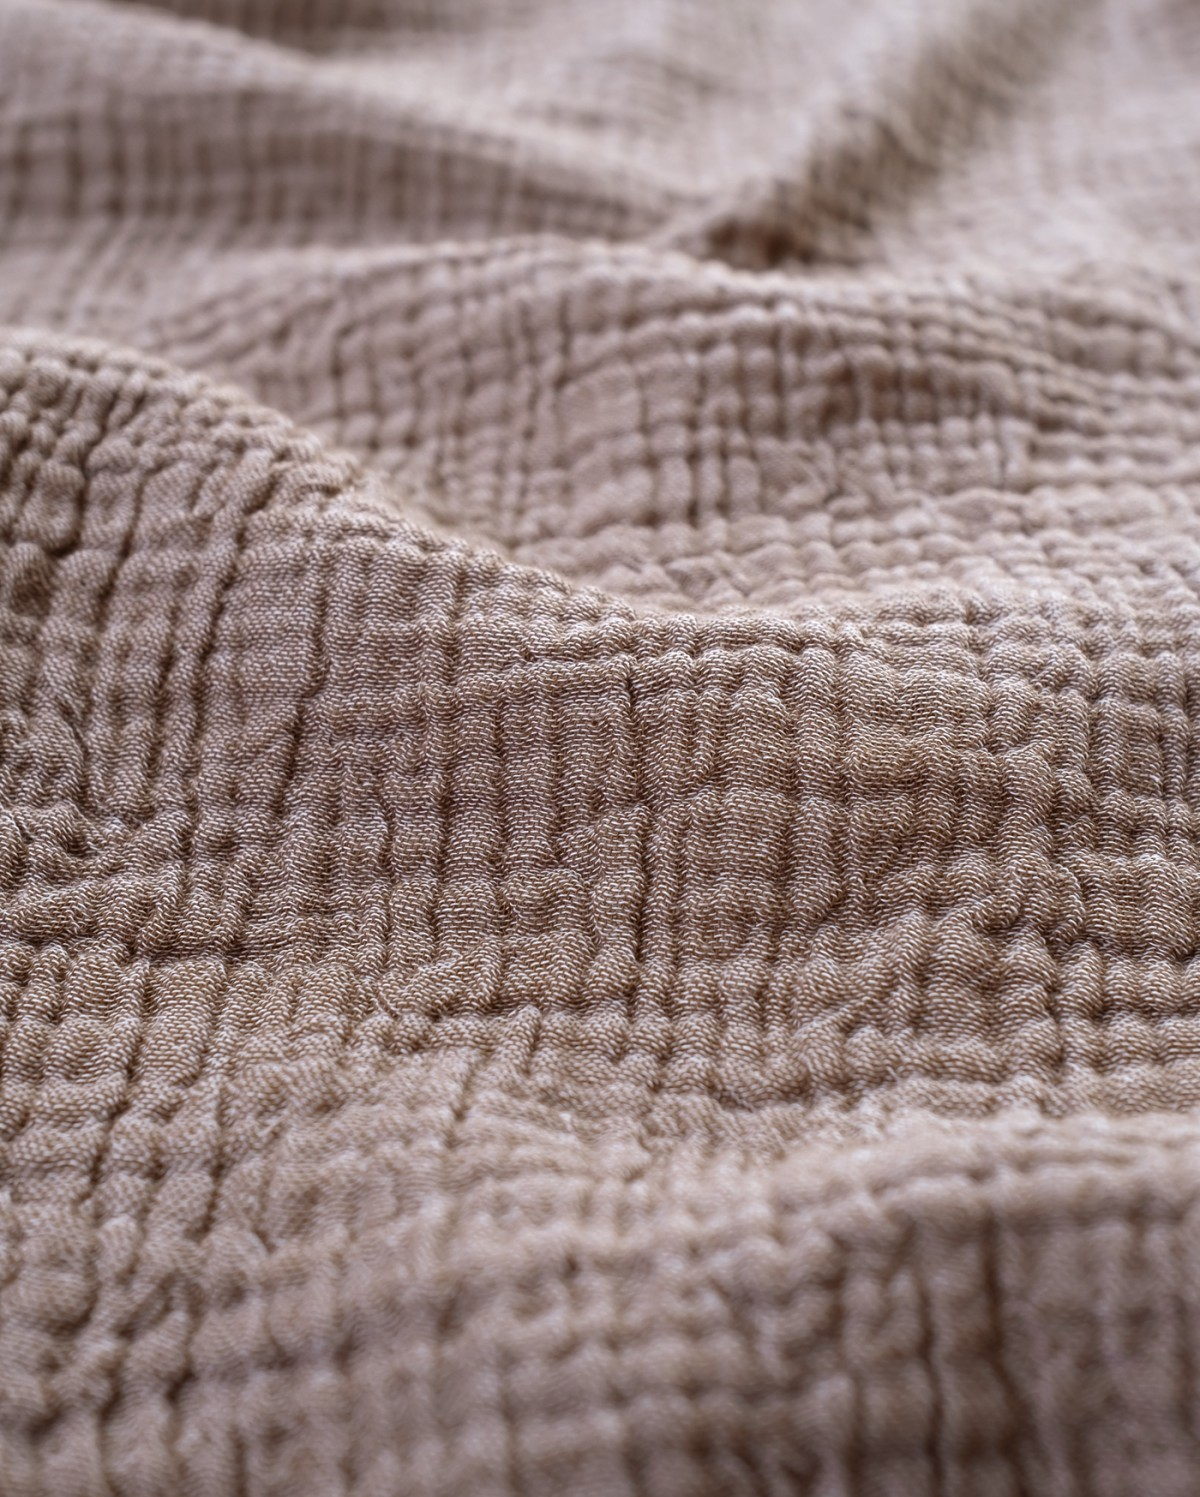 Cocoon Muslin Cotton Blanket- Bison & Oak Buff